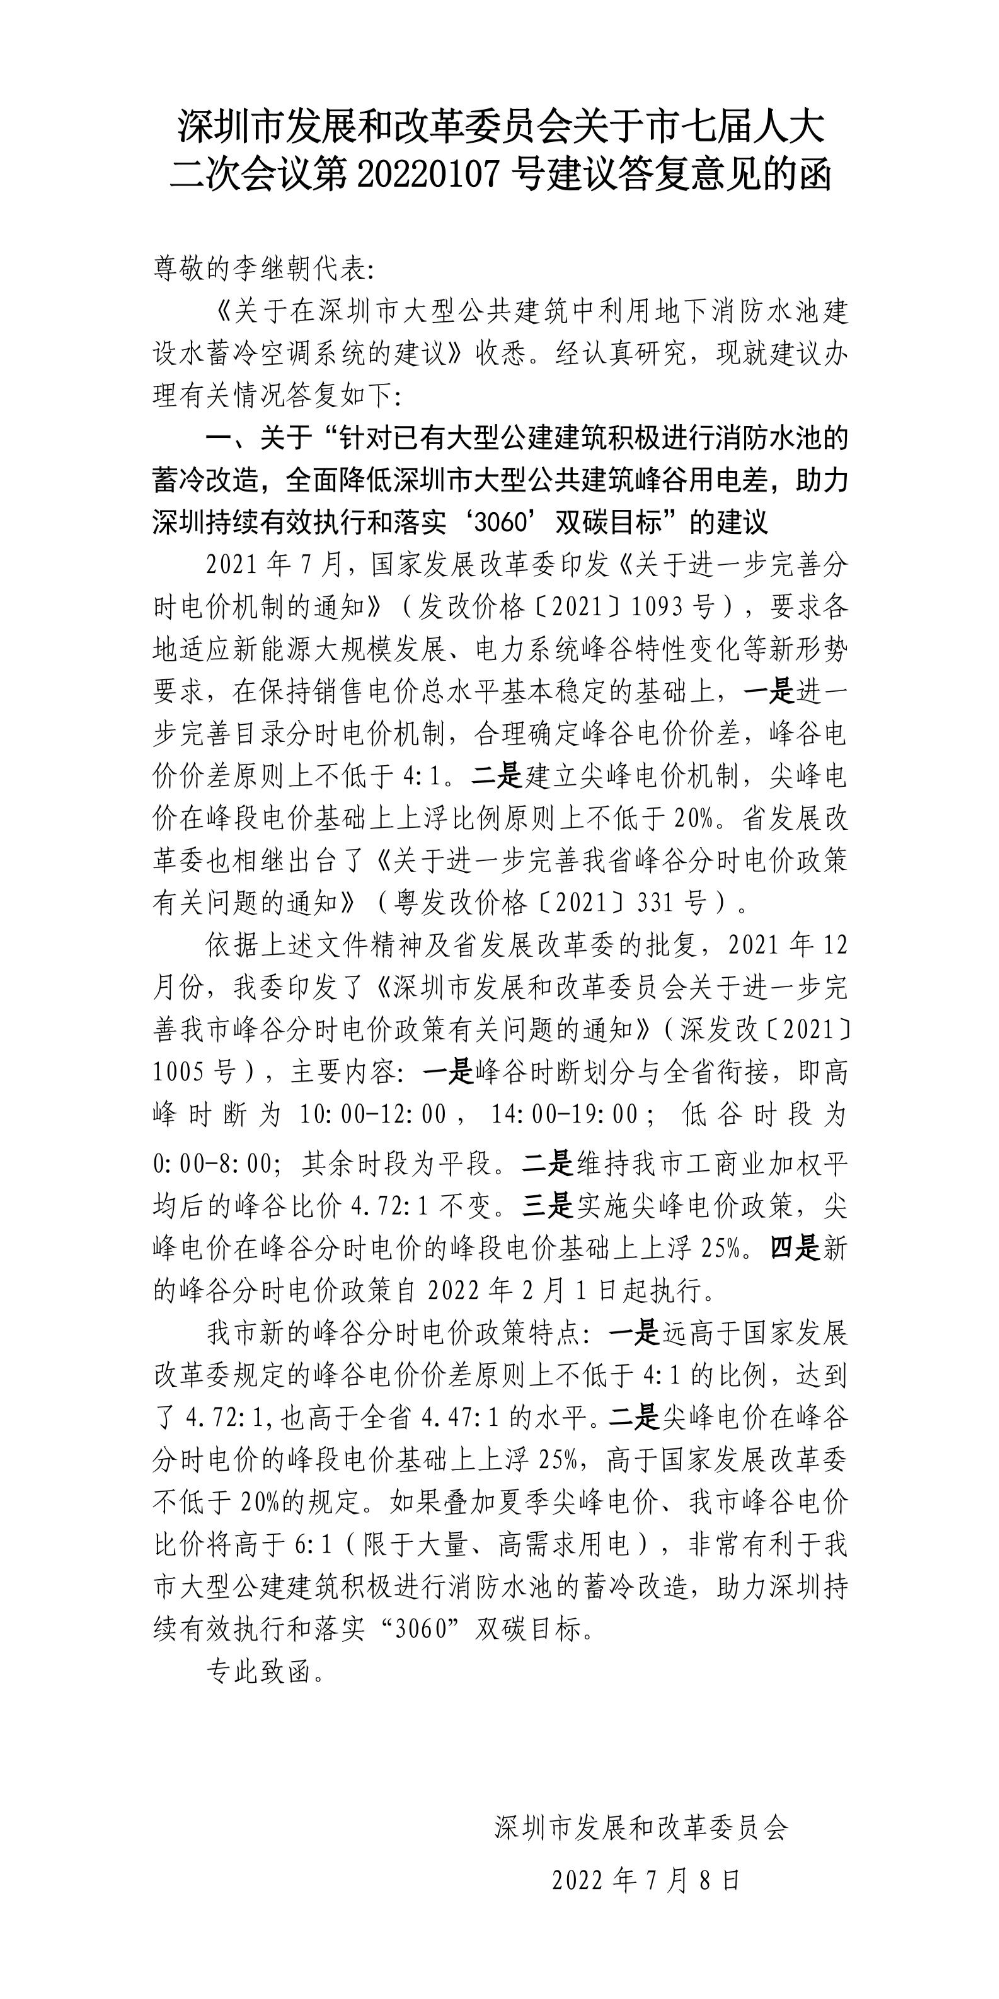 深圳市发展和改革委员会关于市七届人大二次会议第20220107号建议答复意见的函.jpg